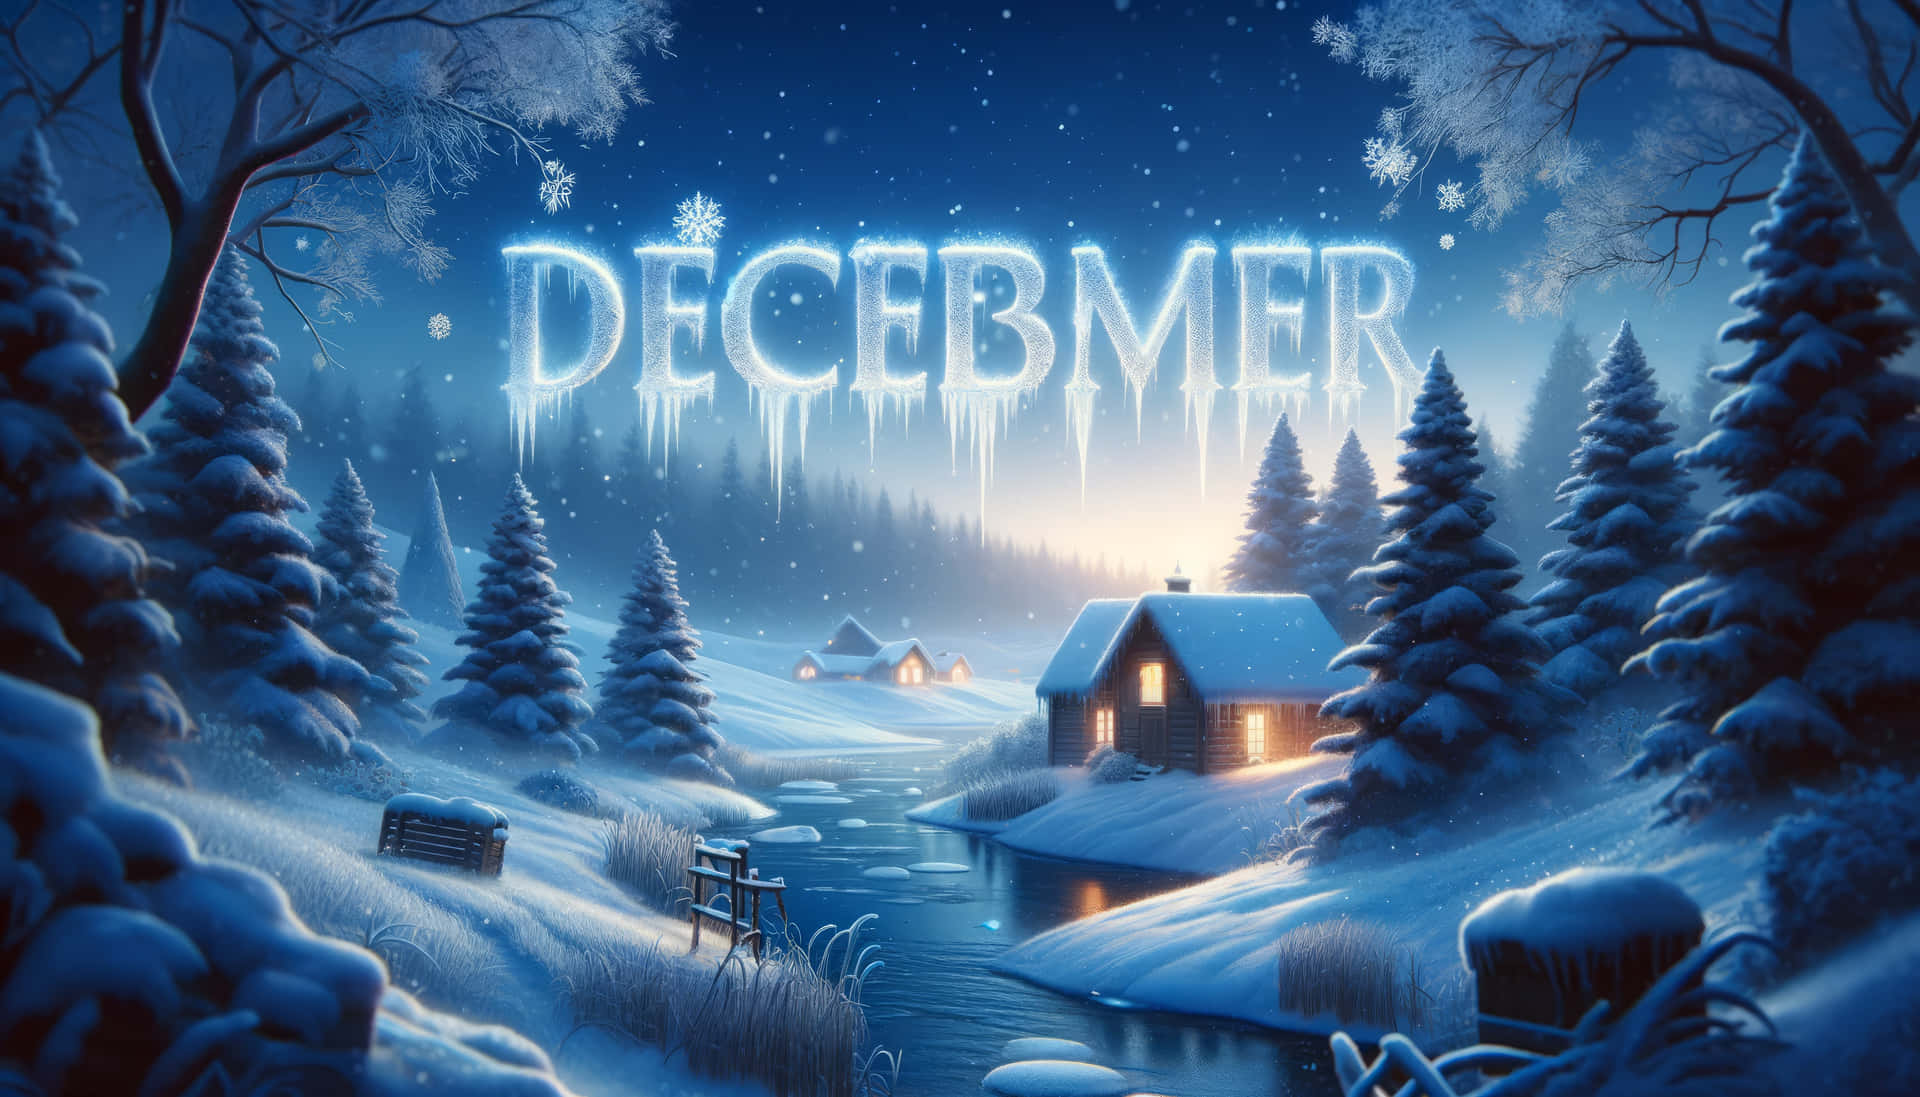 Enchanted December Winter Night Wallpaper